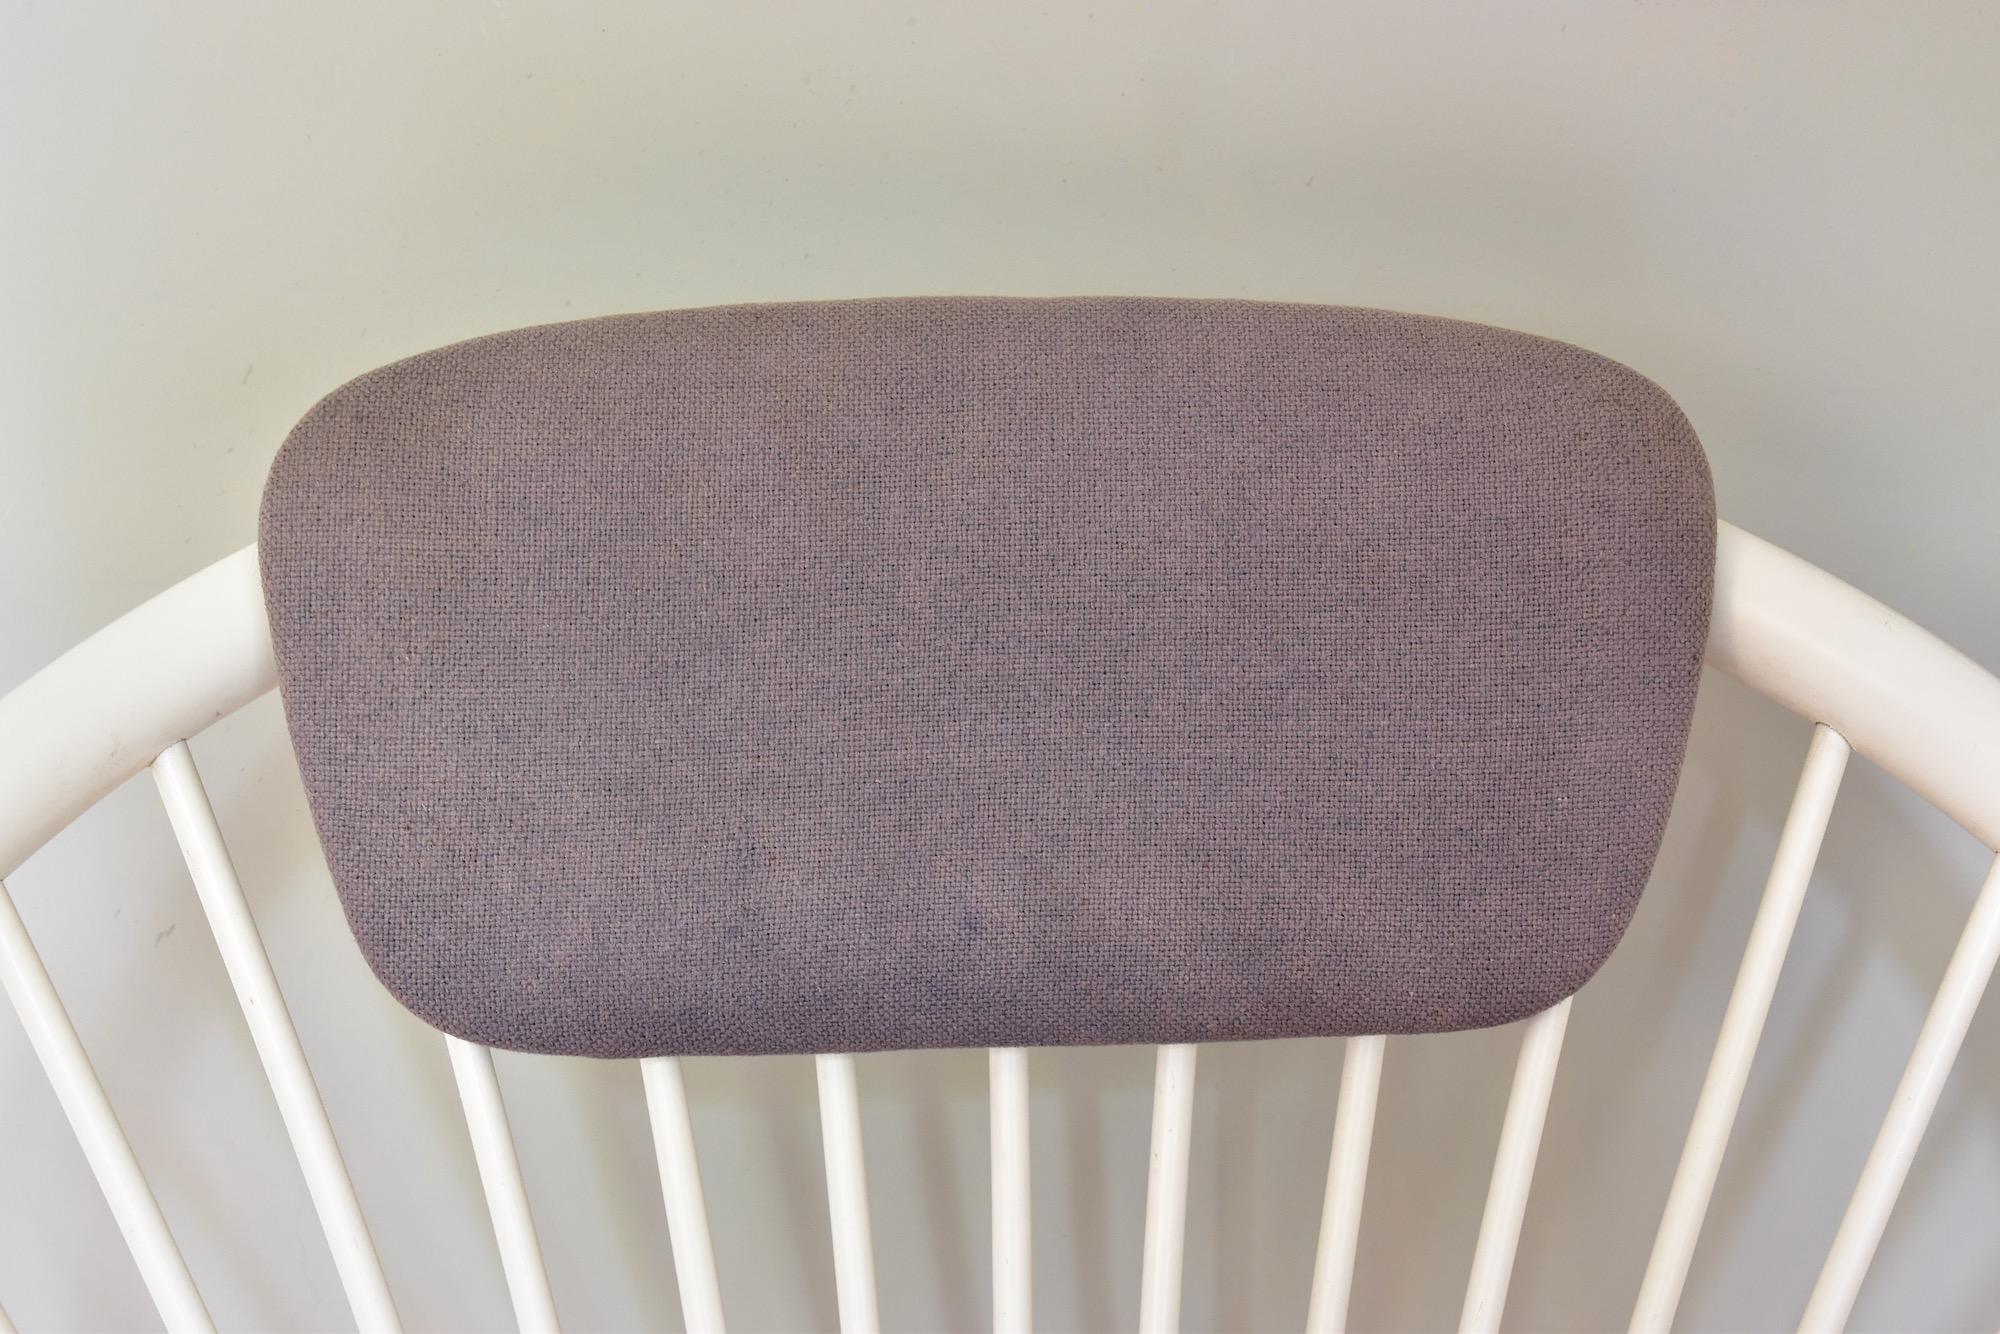 Kreisförmiger Sessel aus der Mitte des Jahrhunderts von Yngve Ekström für Swedese, Schweden. Kissen mit einigen Flecken. Der blaue Stoff hat sich durch die Sonneneinstrahlung grau verfärbt :-). Farbe mit einigen Schäden. Alter Zustand.